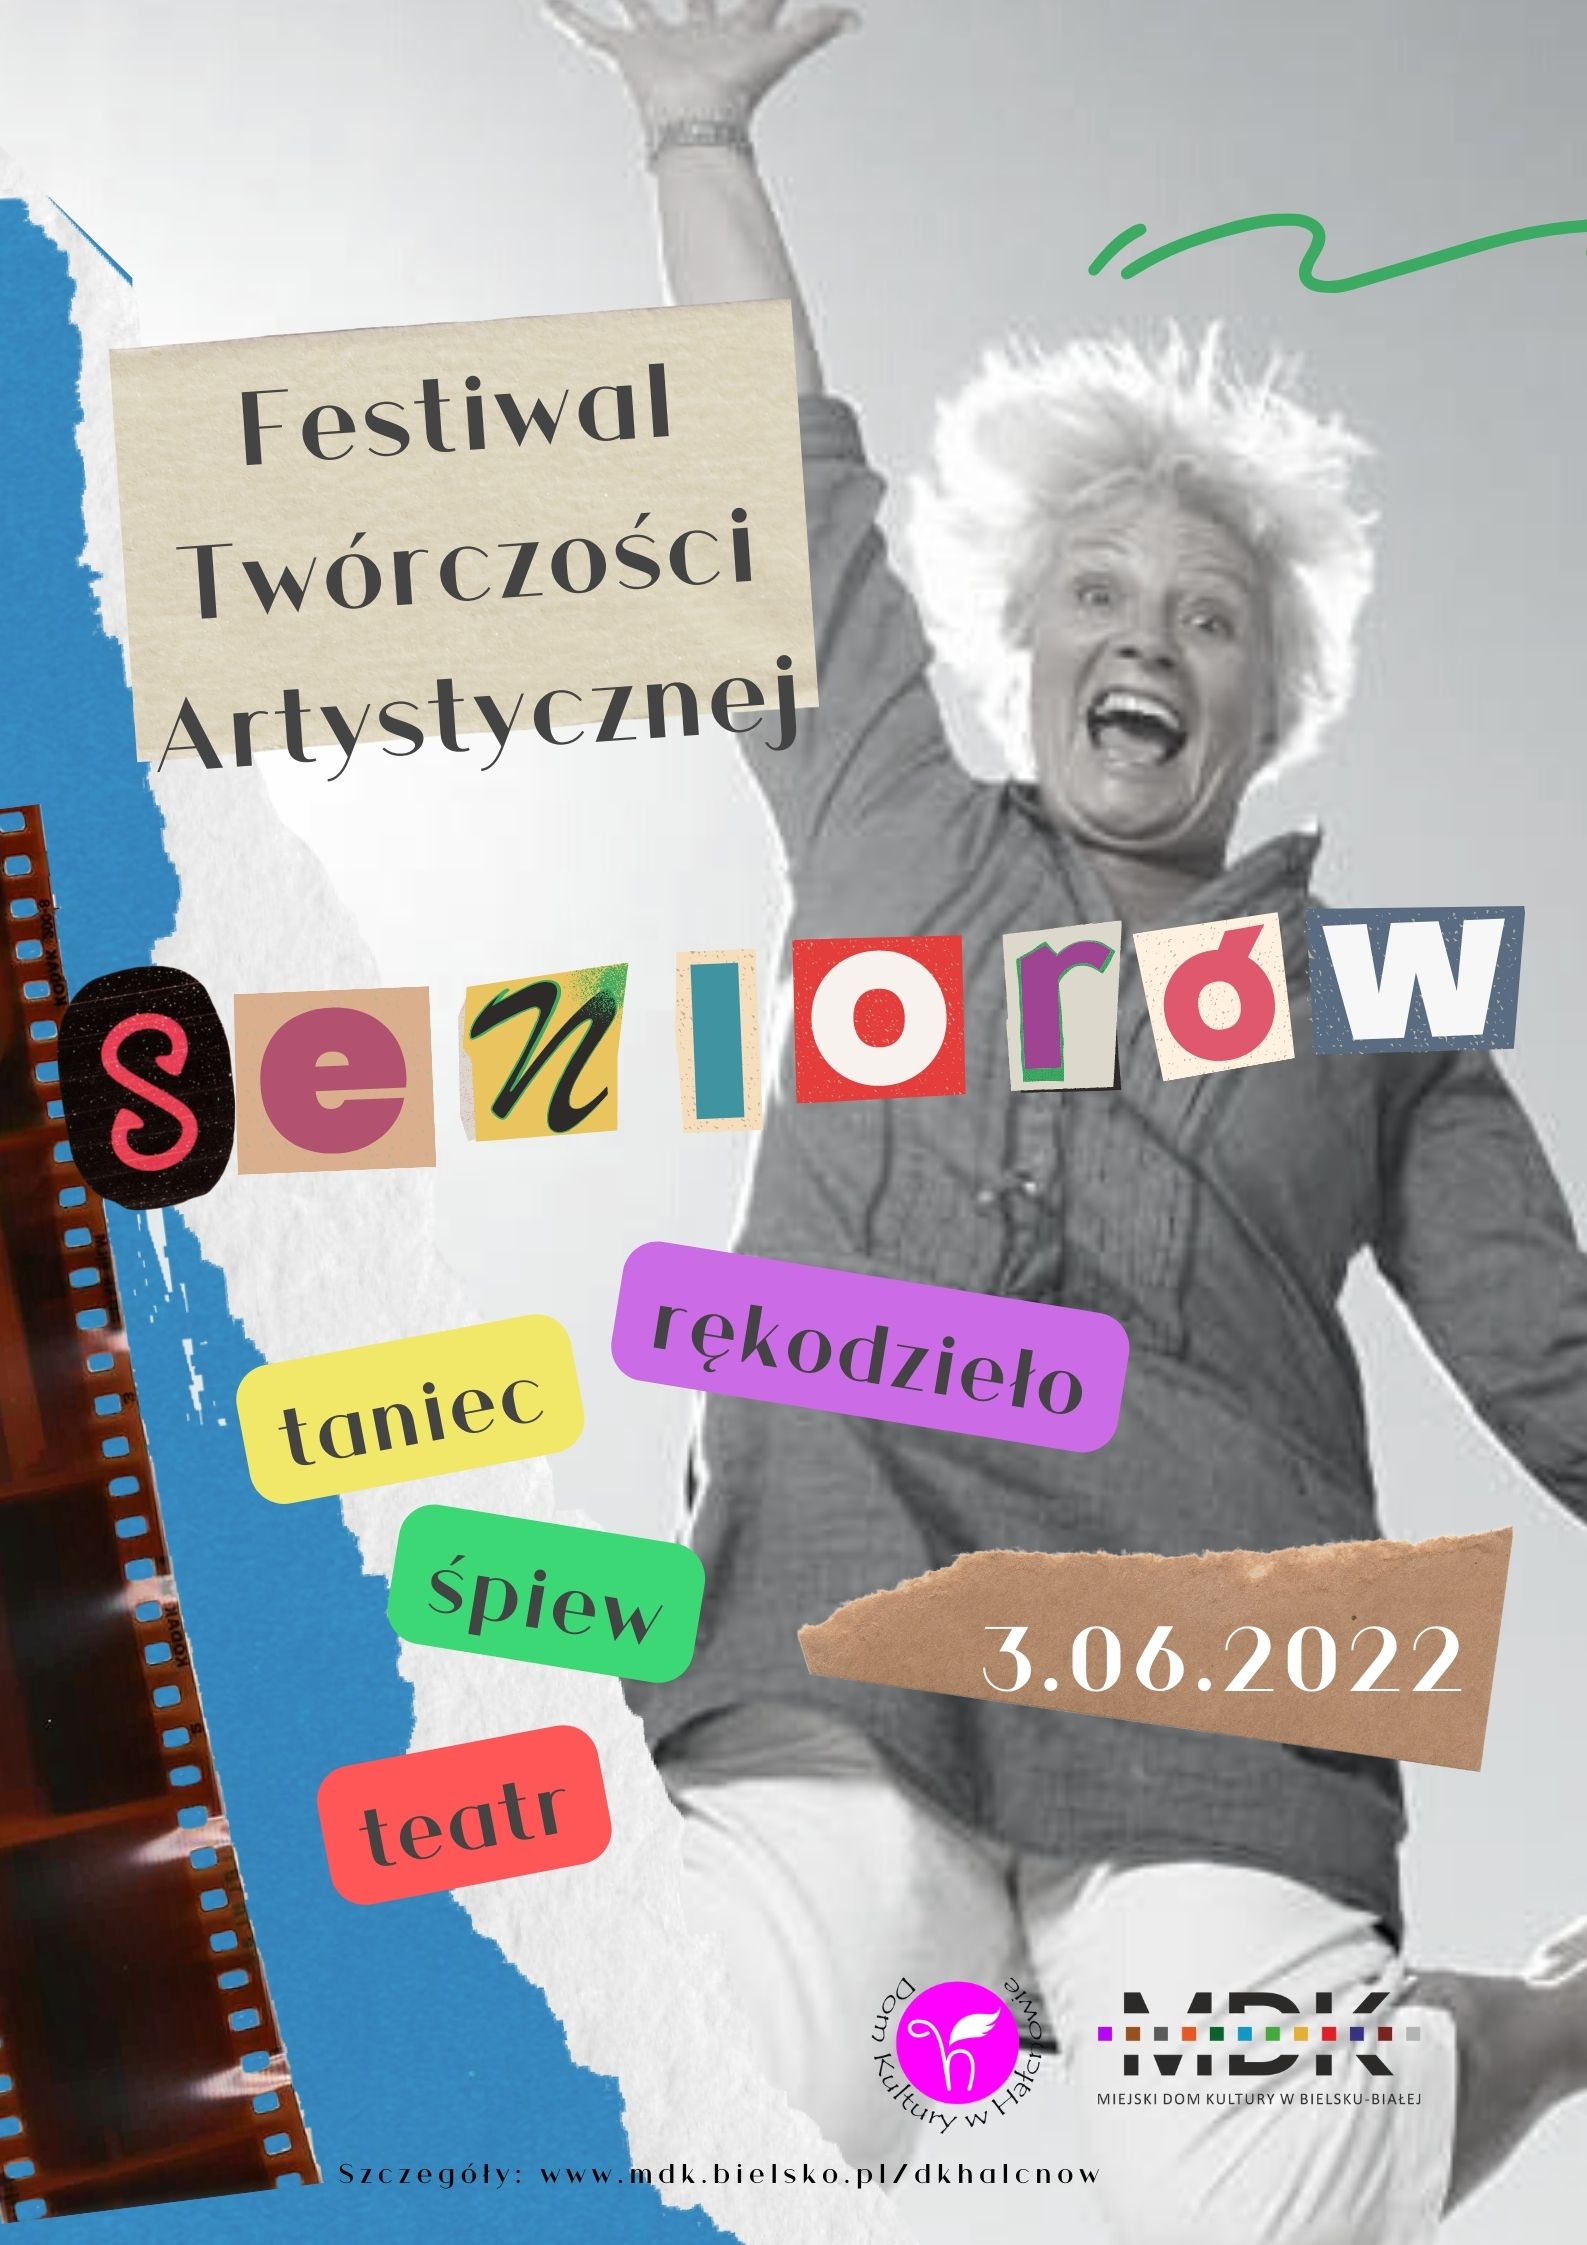  5. Festiwal Twórczości Artystycznej Seniorów Na zdjęciu plakat imprezy